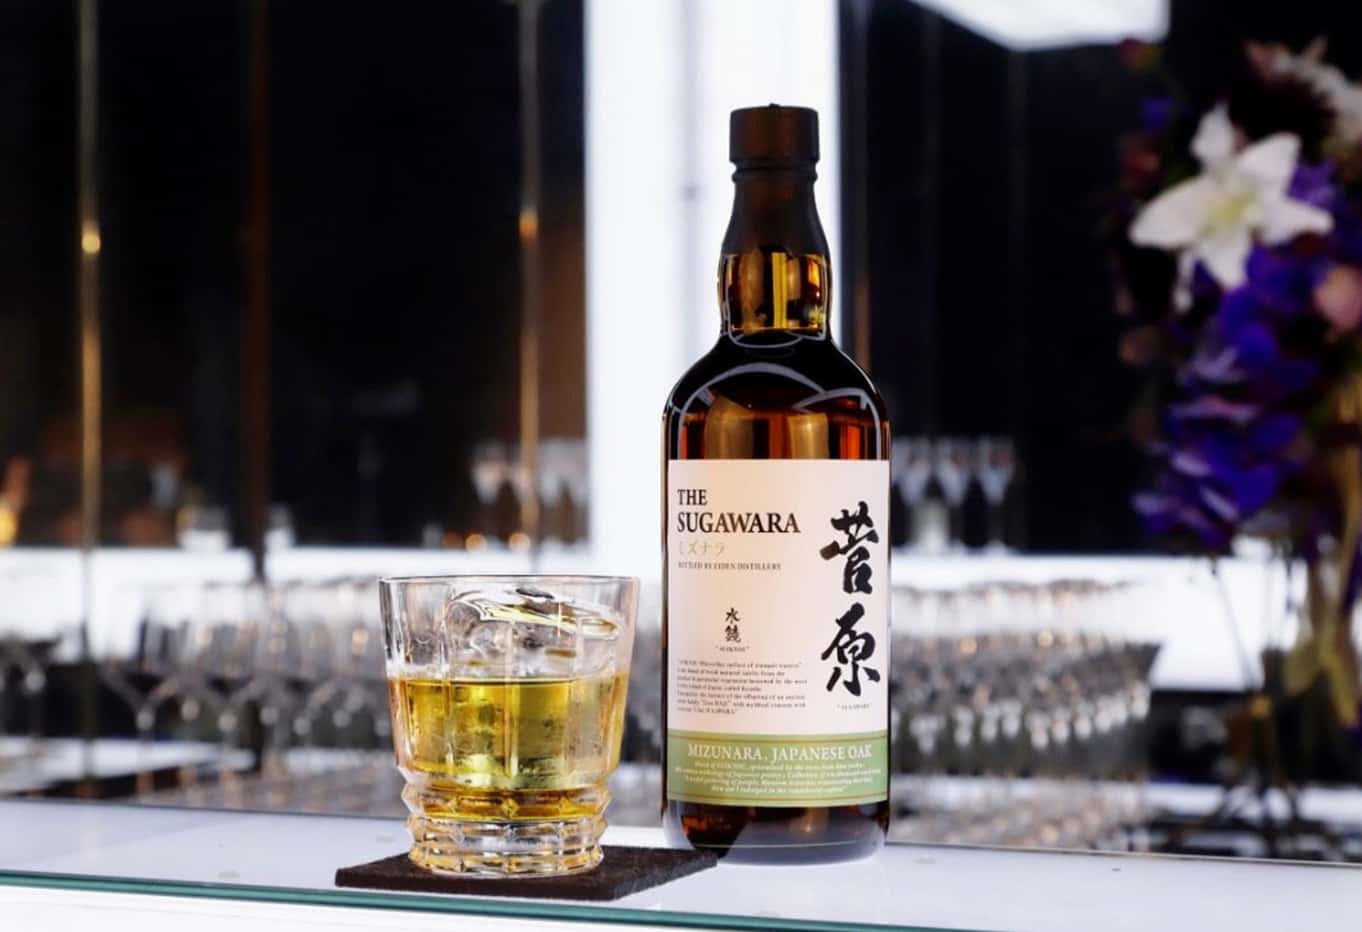 誕生秘話 | 麹ウイスキーから始まった日本の樽熟成酒「菅原水鏡」 - 酒商菅原